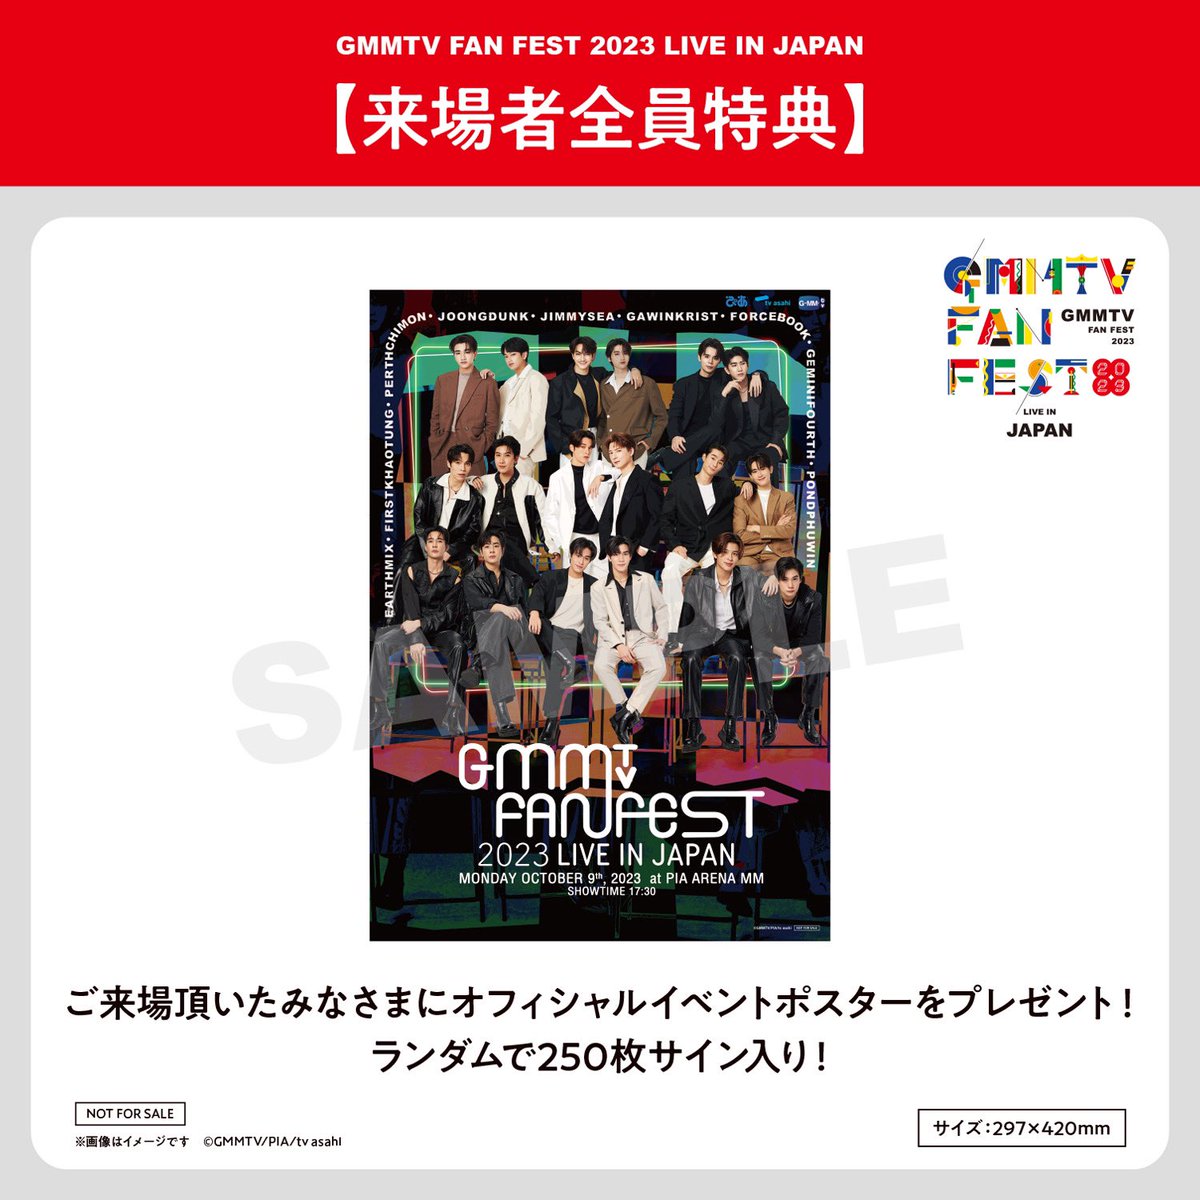 GMMTV FAN FEST 2023 LIVE IN JAPAN on X: 